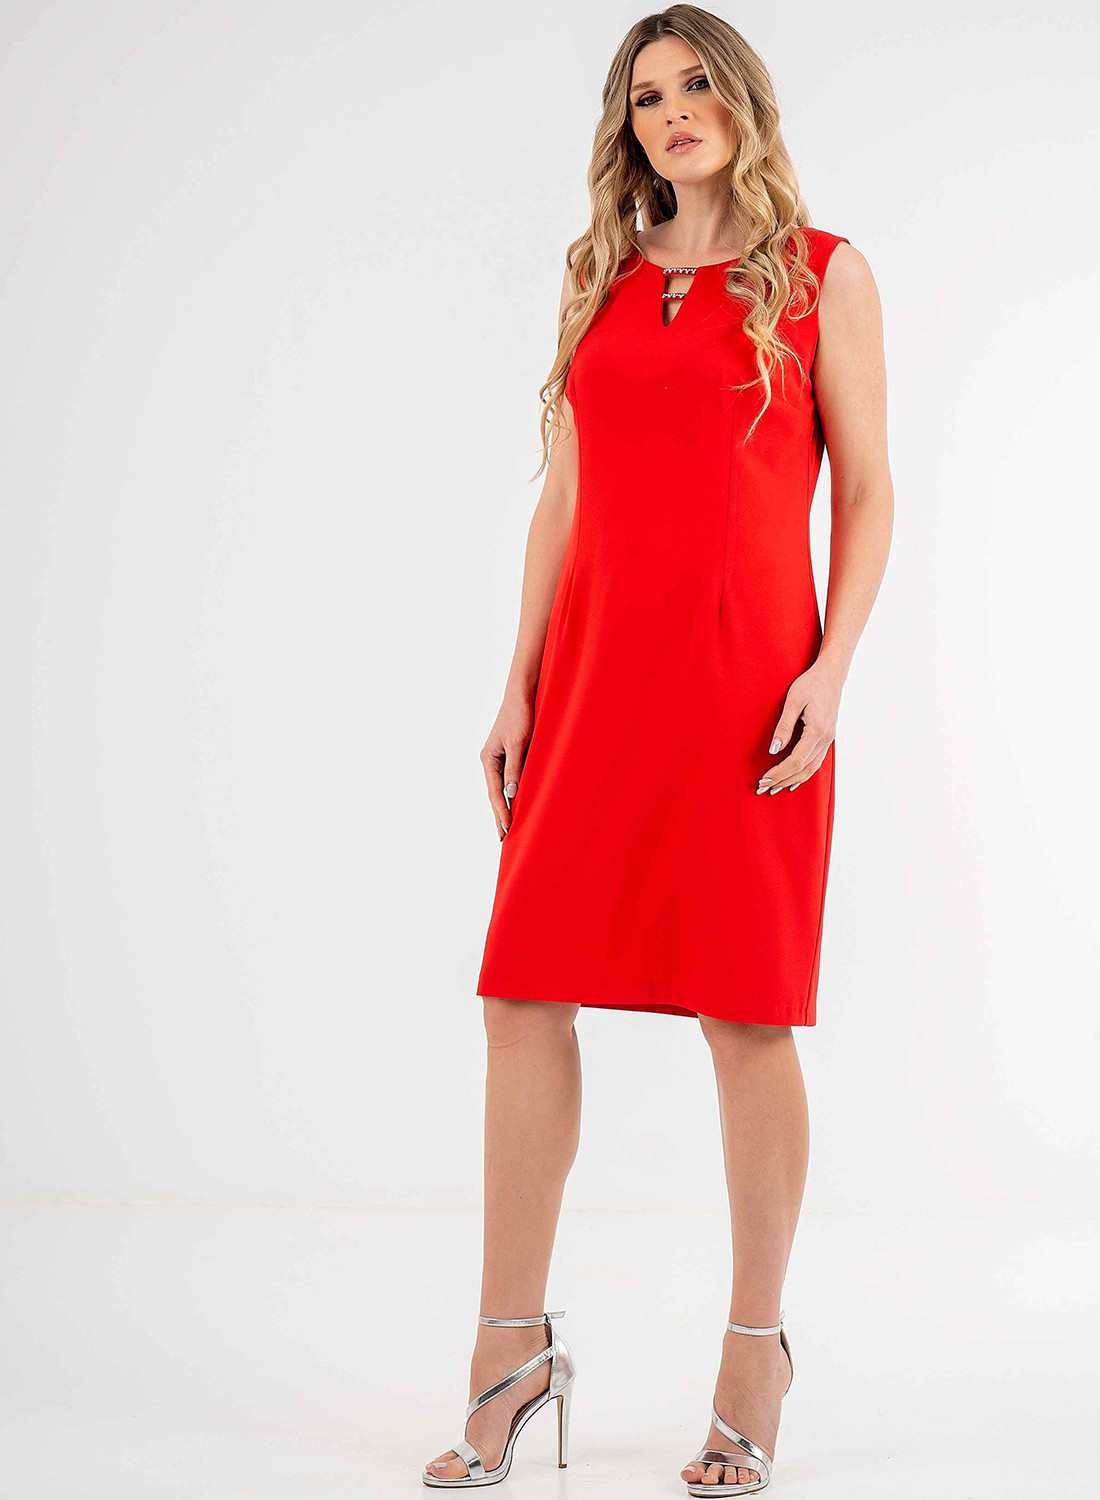 Θηλυκό midi κόκκινο φόρεμα